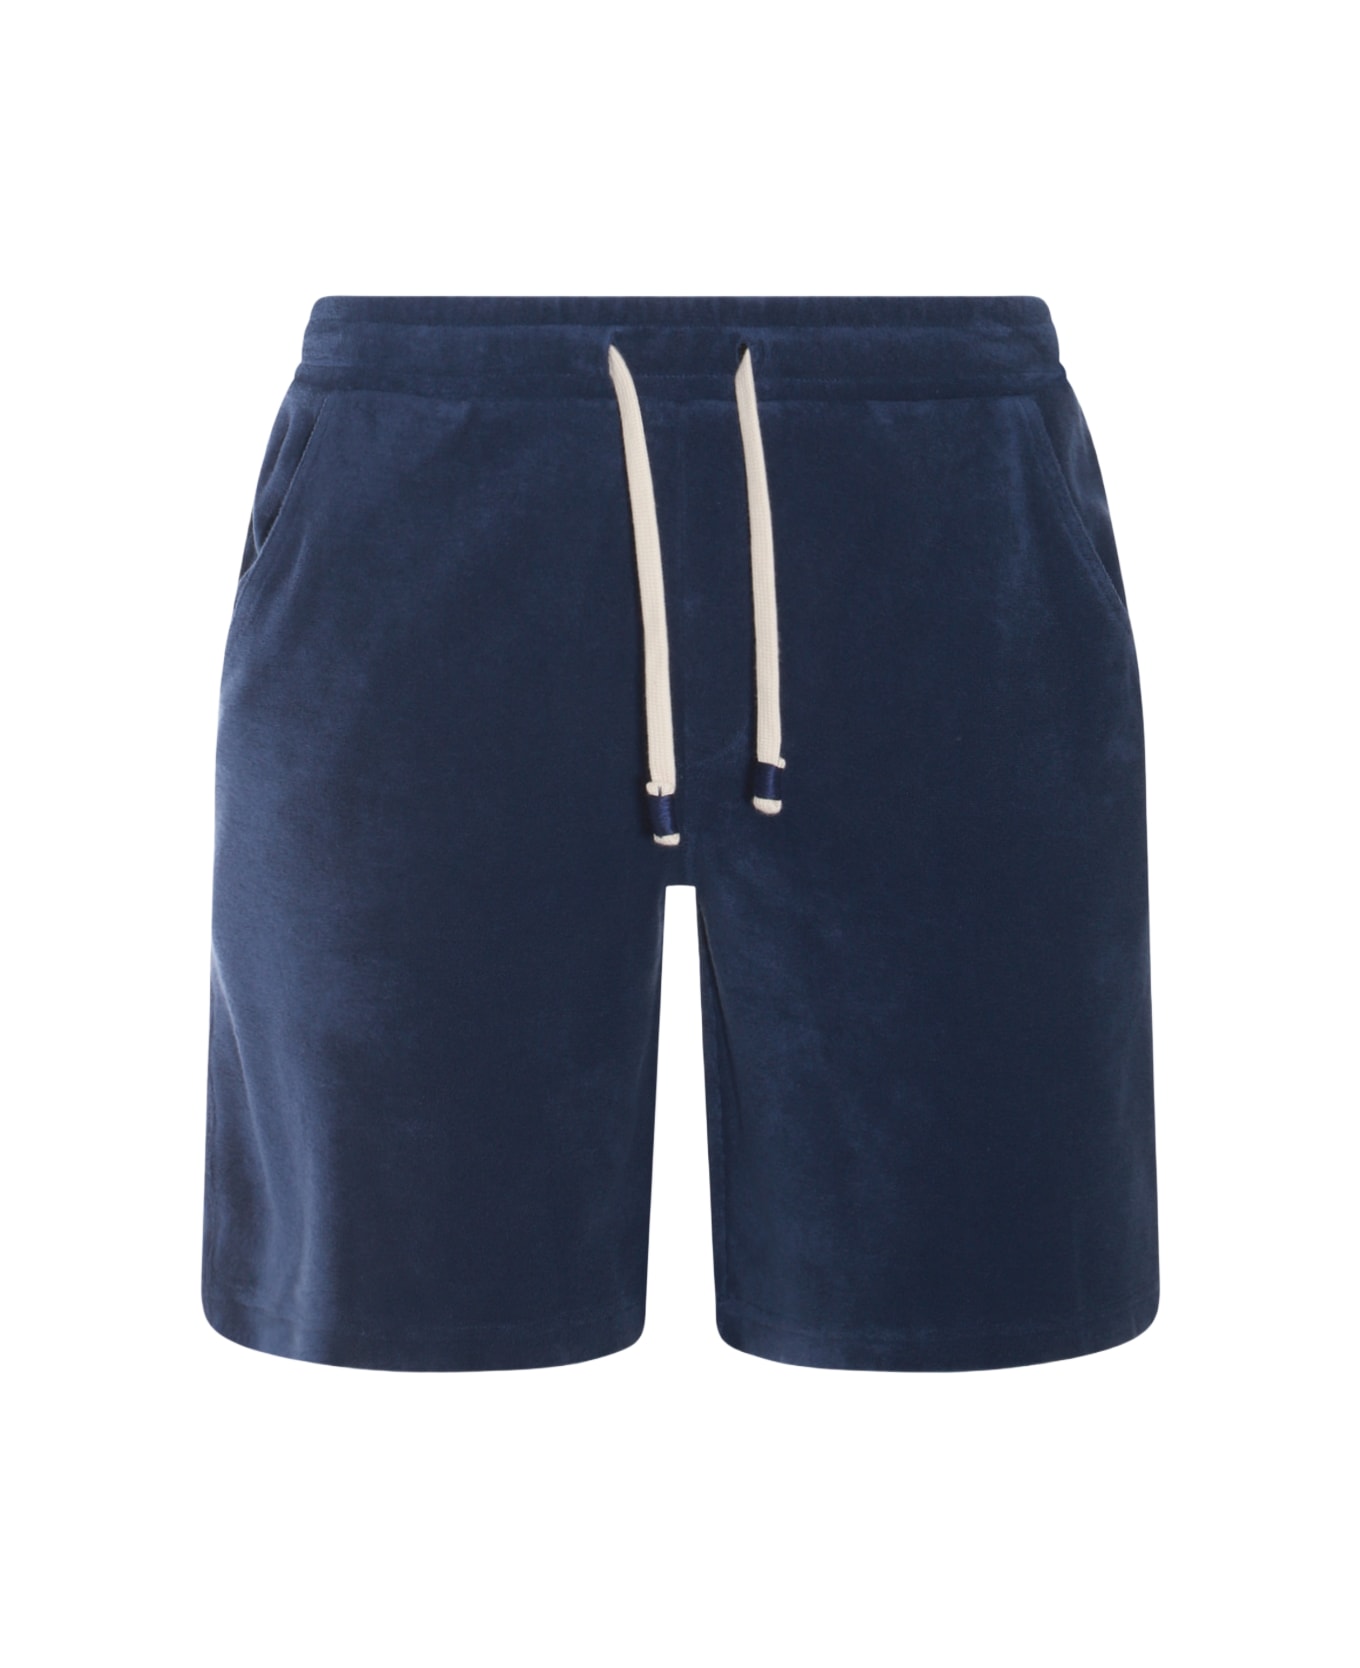 Altea Blue Cotton Shorts - Blue